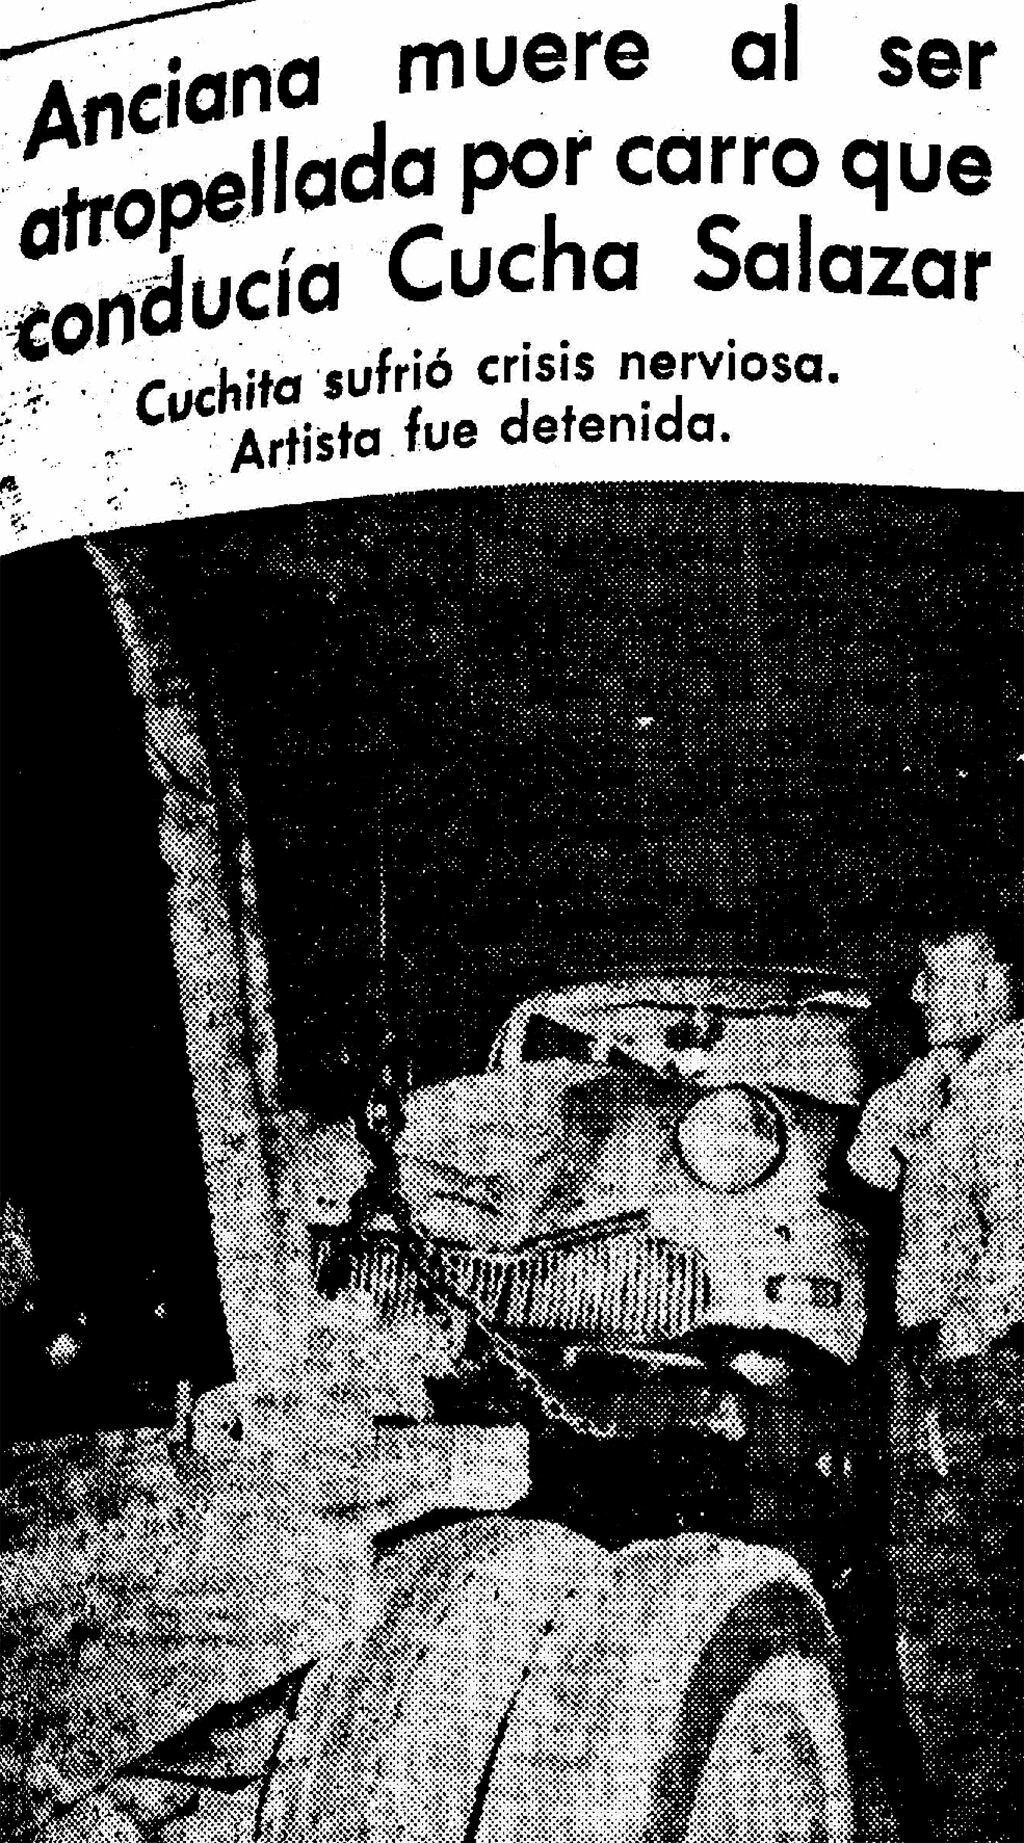 Noticia de El Comercio del 2 de marzo de 1963. La información al día siguiente del accidente dejó consternados a todos los admiradores de Cuchita Salazar. (Foto: GEC Archivo Histórico)   